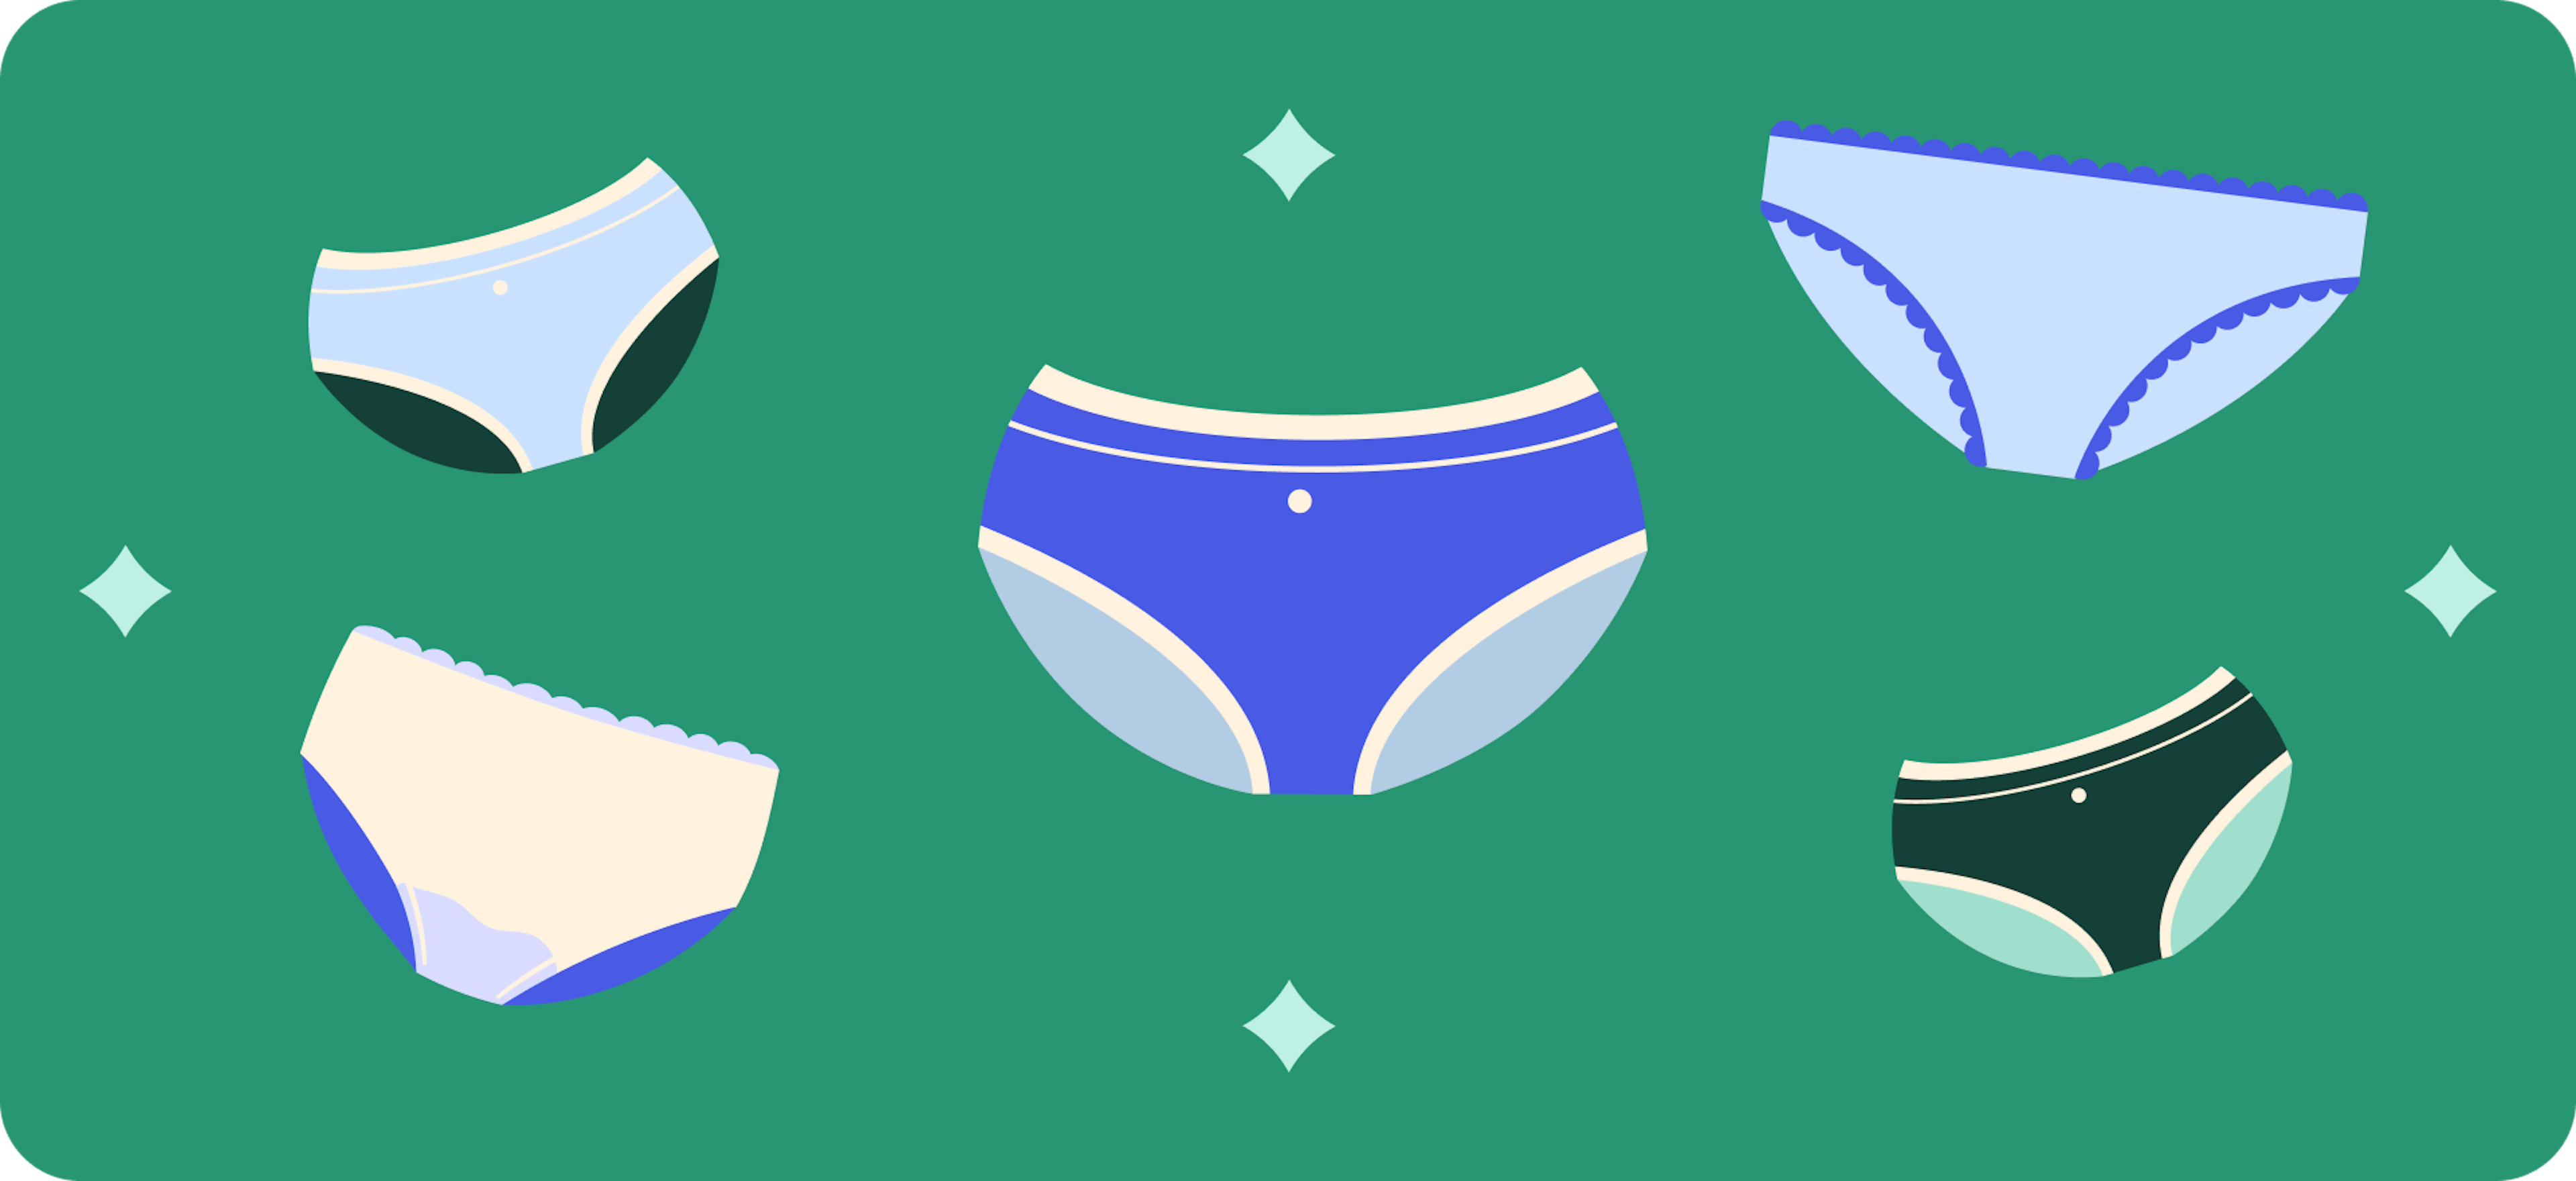 Period panties